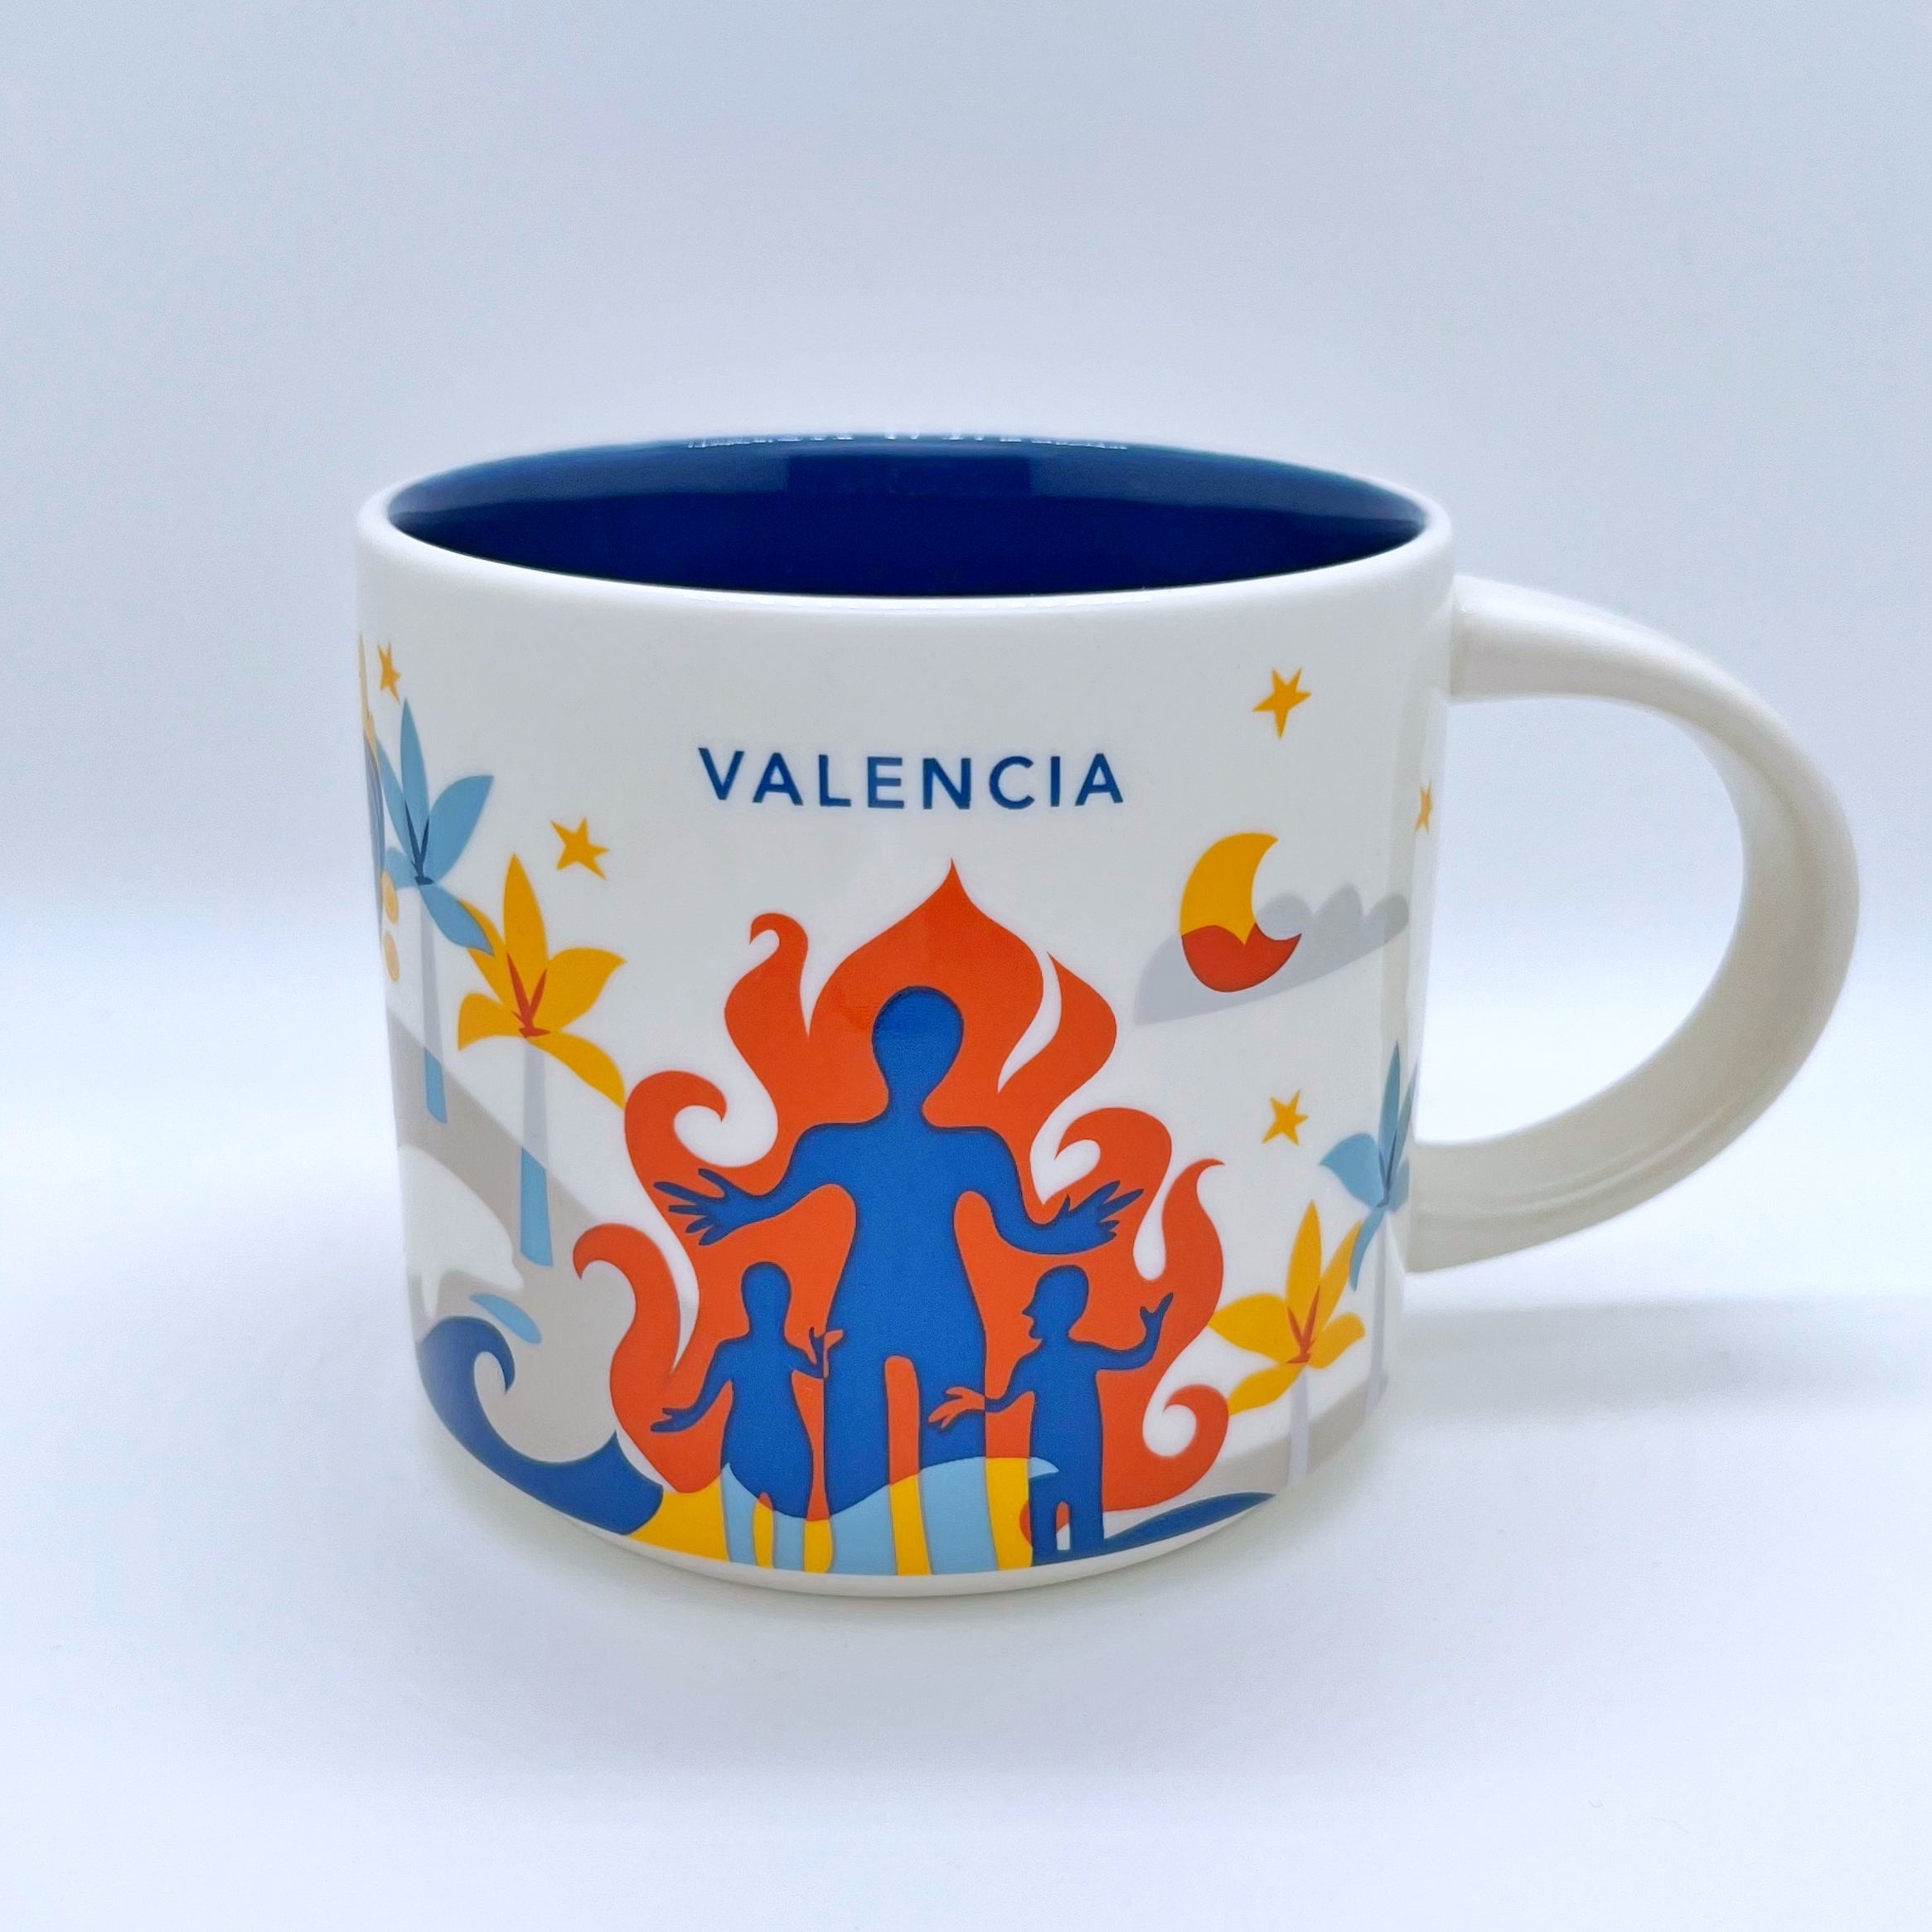 Kaffee Tee und Cappuccino Tasse von Starbucks mit gemalten Bildern aus der Stadt Valencia